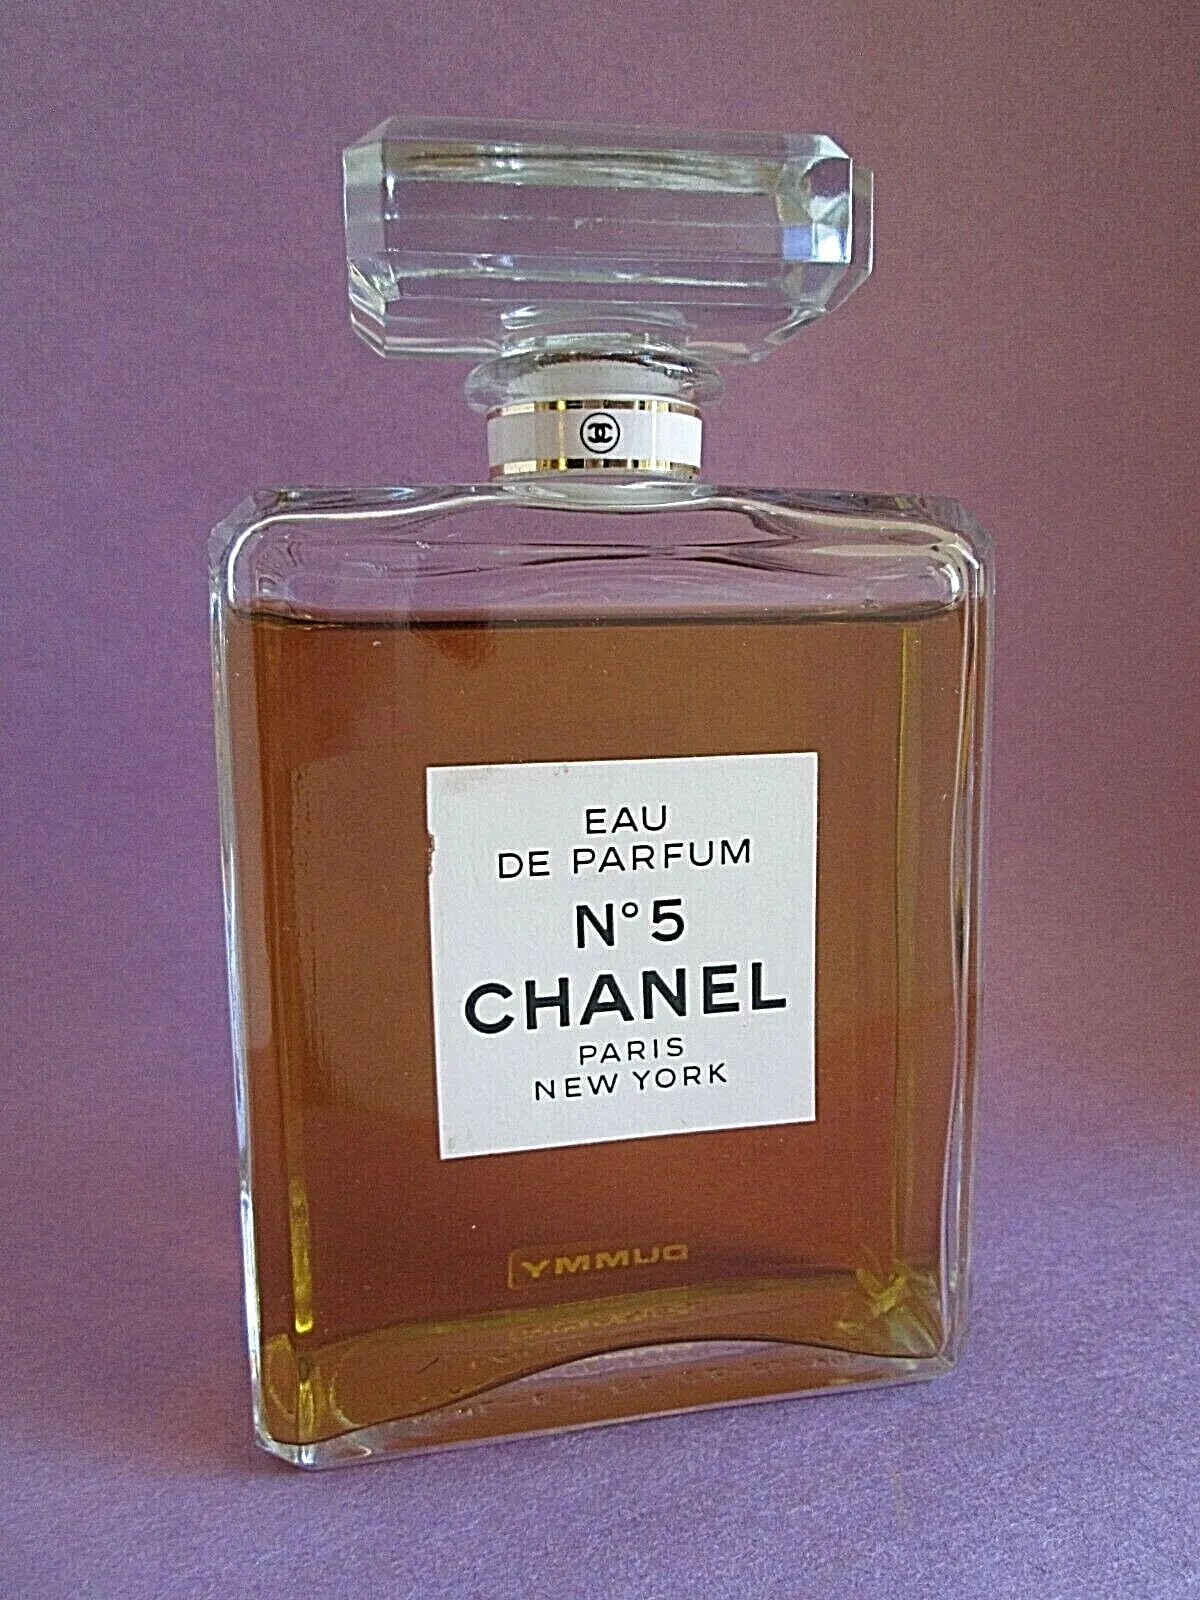 Chanel No 5 Eau De Parfum Factice Dummy Display Bottle 6.7oz 200ml Vintage Rare